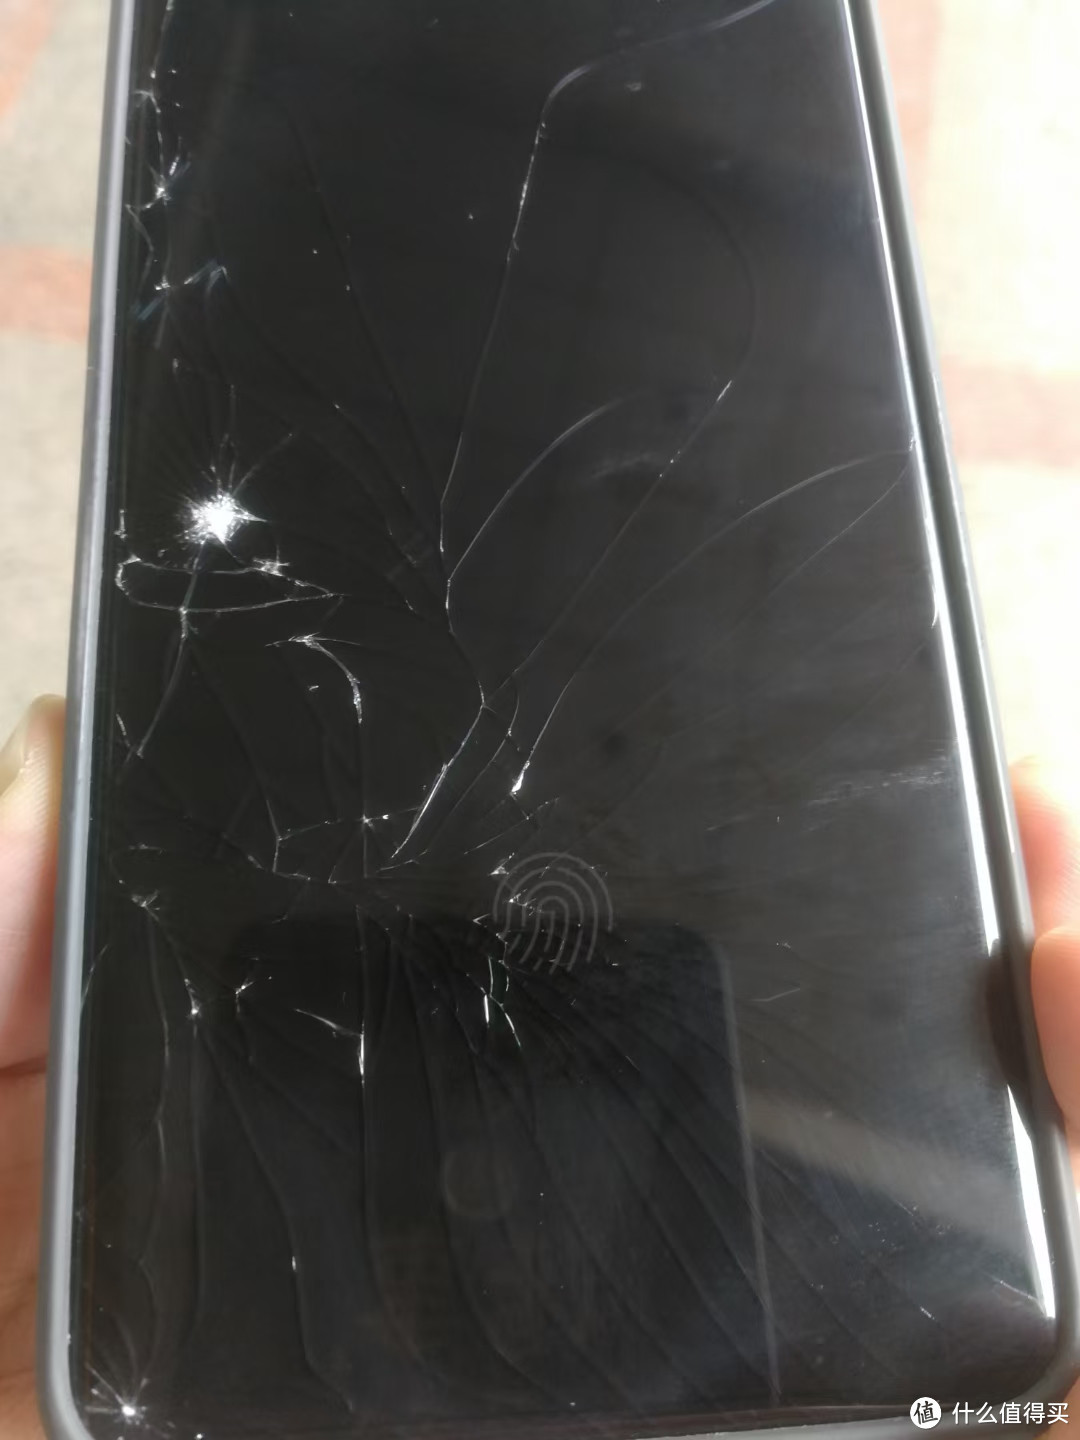 我那倒霉的小米手机11Pro又摔坏了！